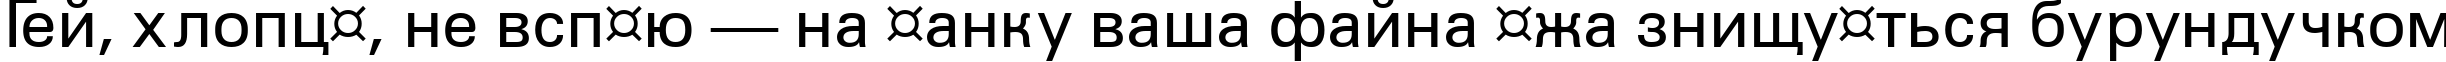 Пример написания шрифтом a_Grotic текста на украинском